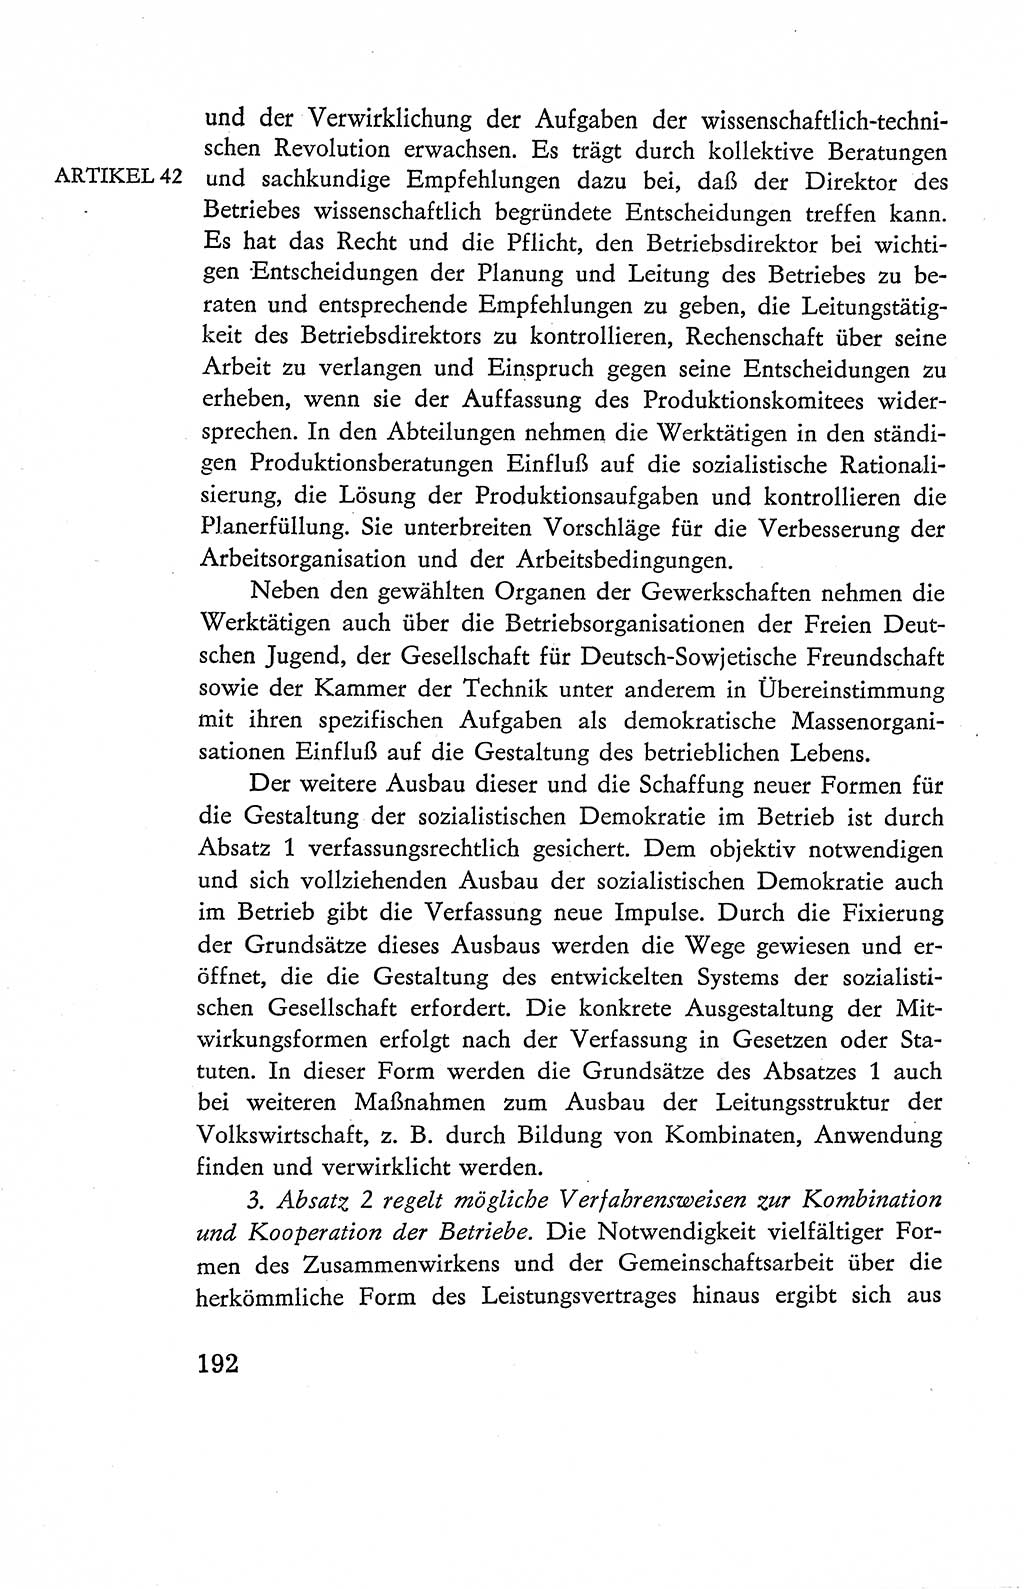 Verfassung der Deutschen Demokratischen Republik (DDR), Dokumente, Kommentar 1969, Band 2, Seite 192 (Verf. DDR Dok. Komm. 1969, Bd. 2, S. 192)